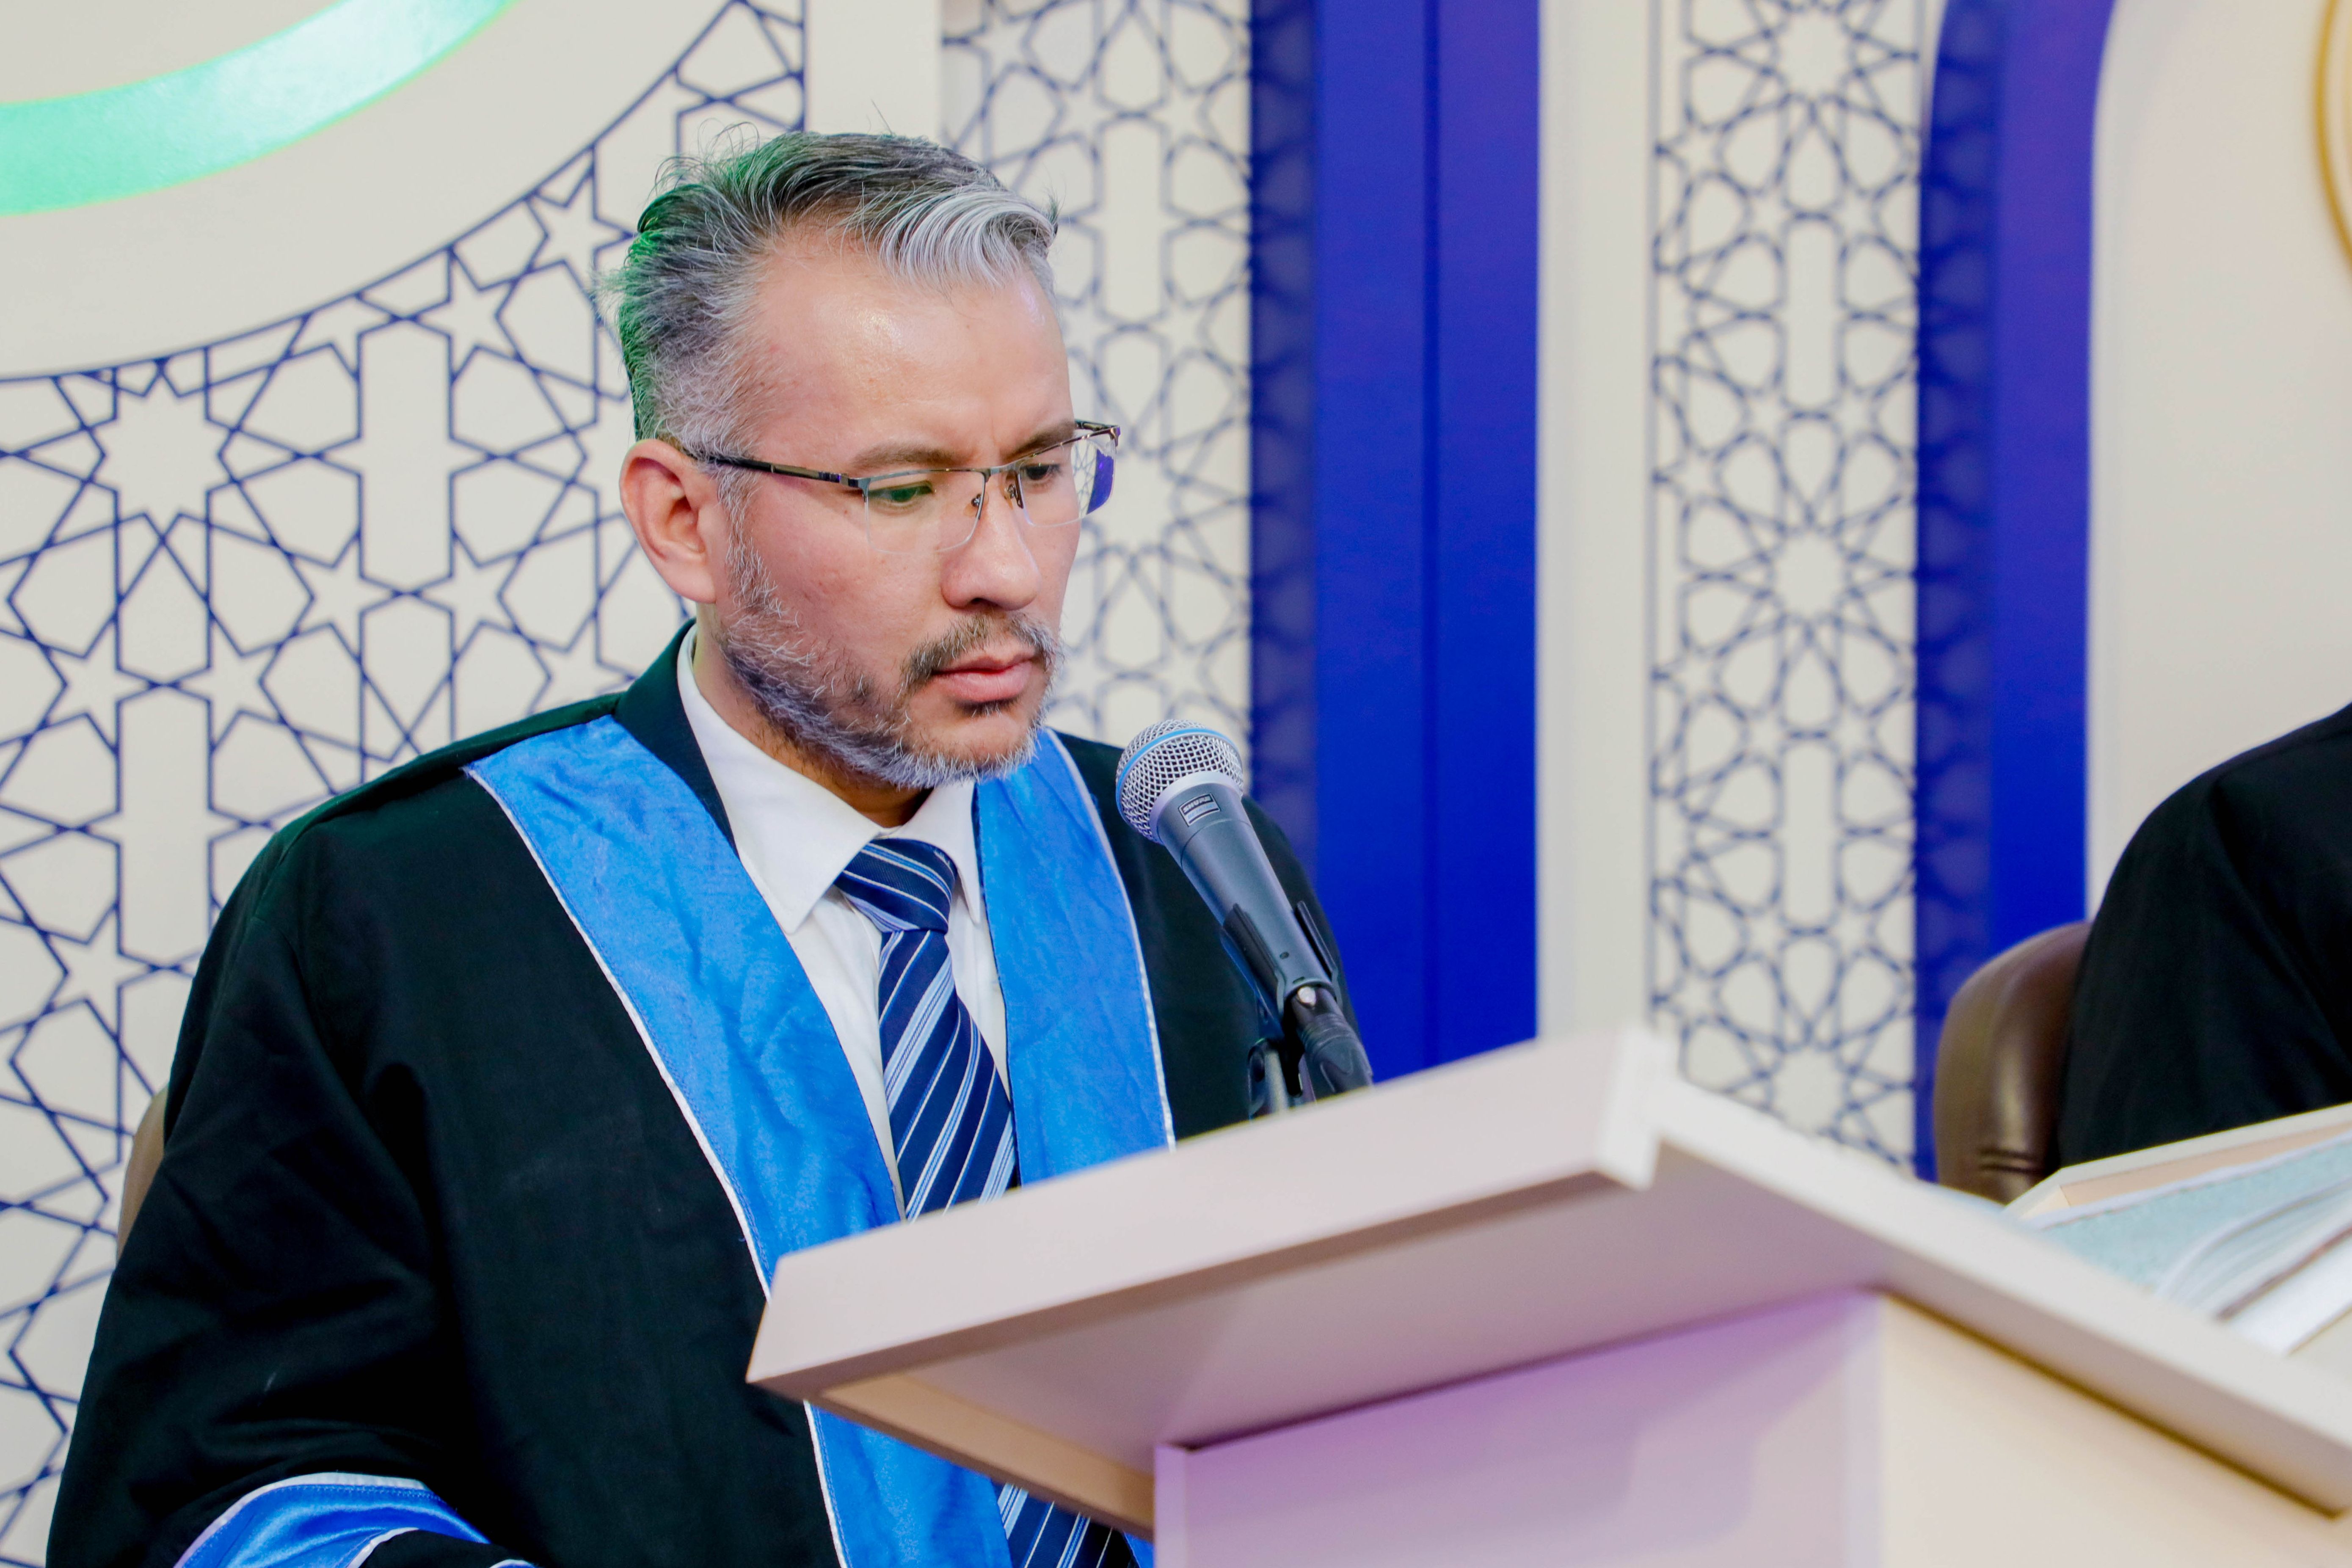 أساتذة الجامعات العراقية يُرتّلون آيات القرآن الكريم ضمن فعاليات الختمة القرآنية الرمضانية